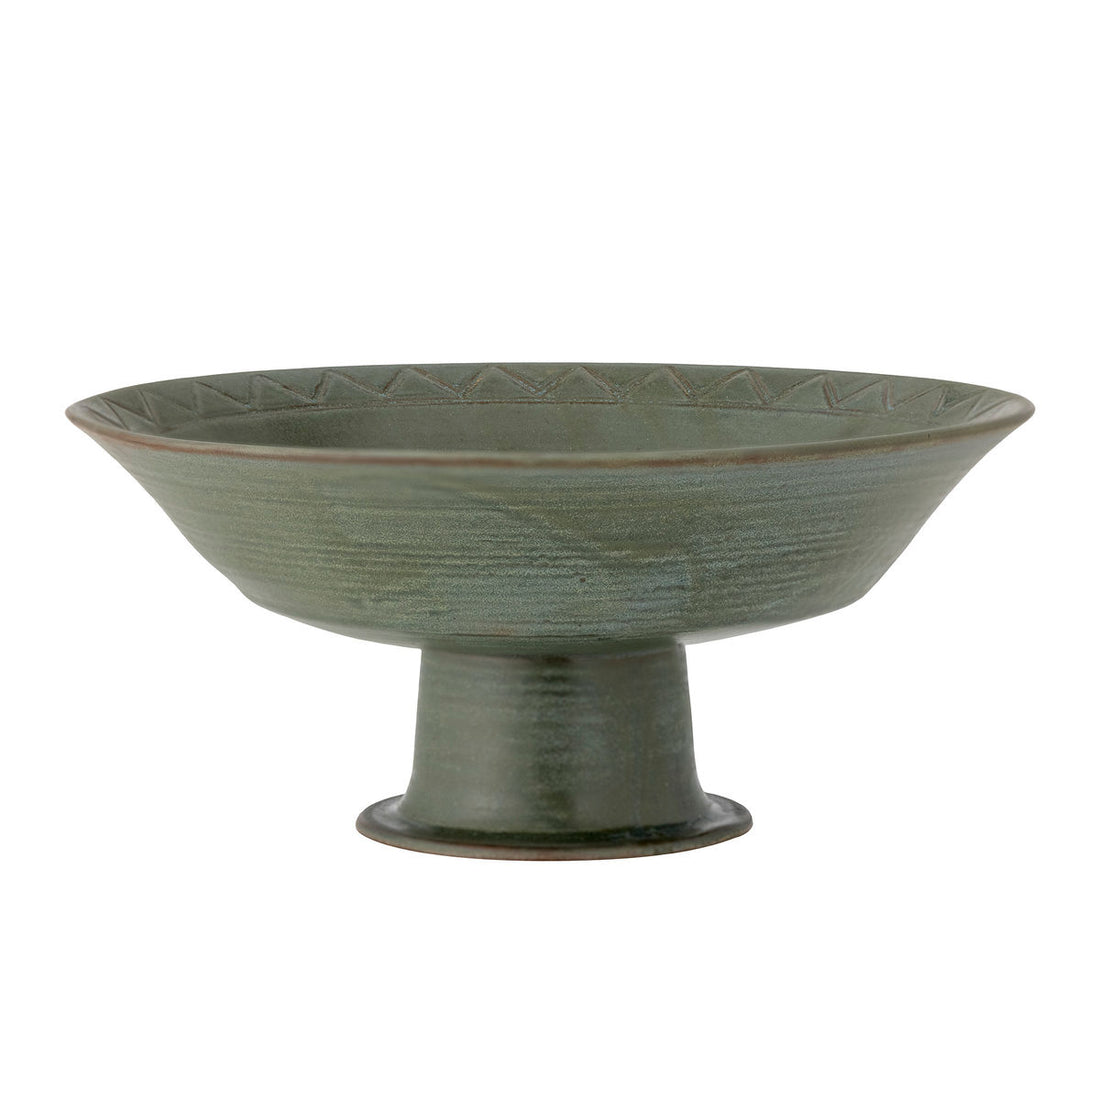 Bloomingville bodie bowl, green, stoneware